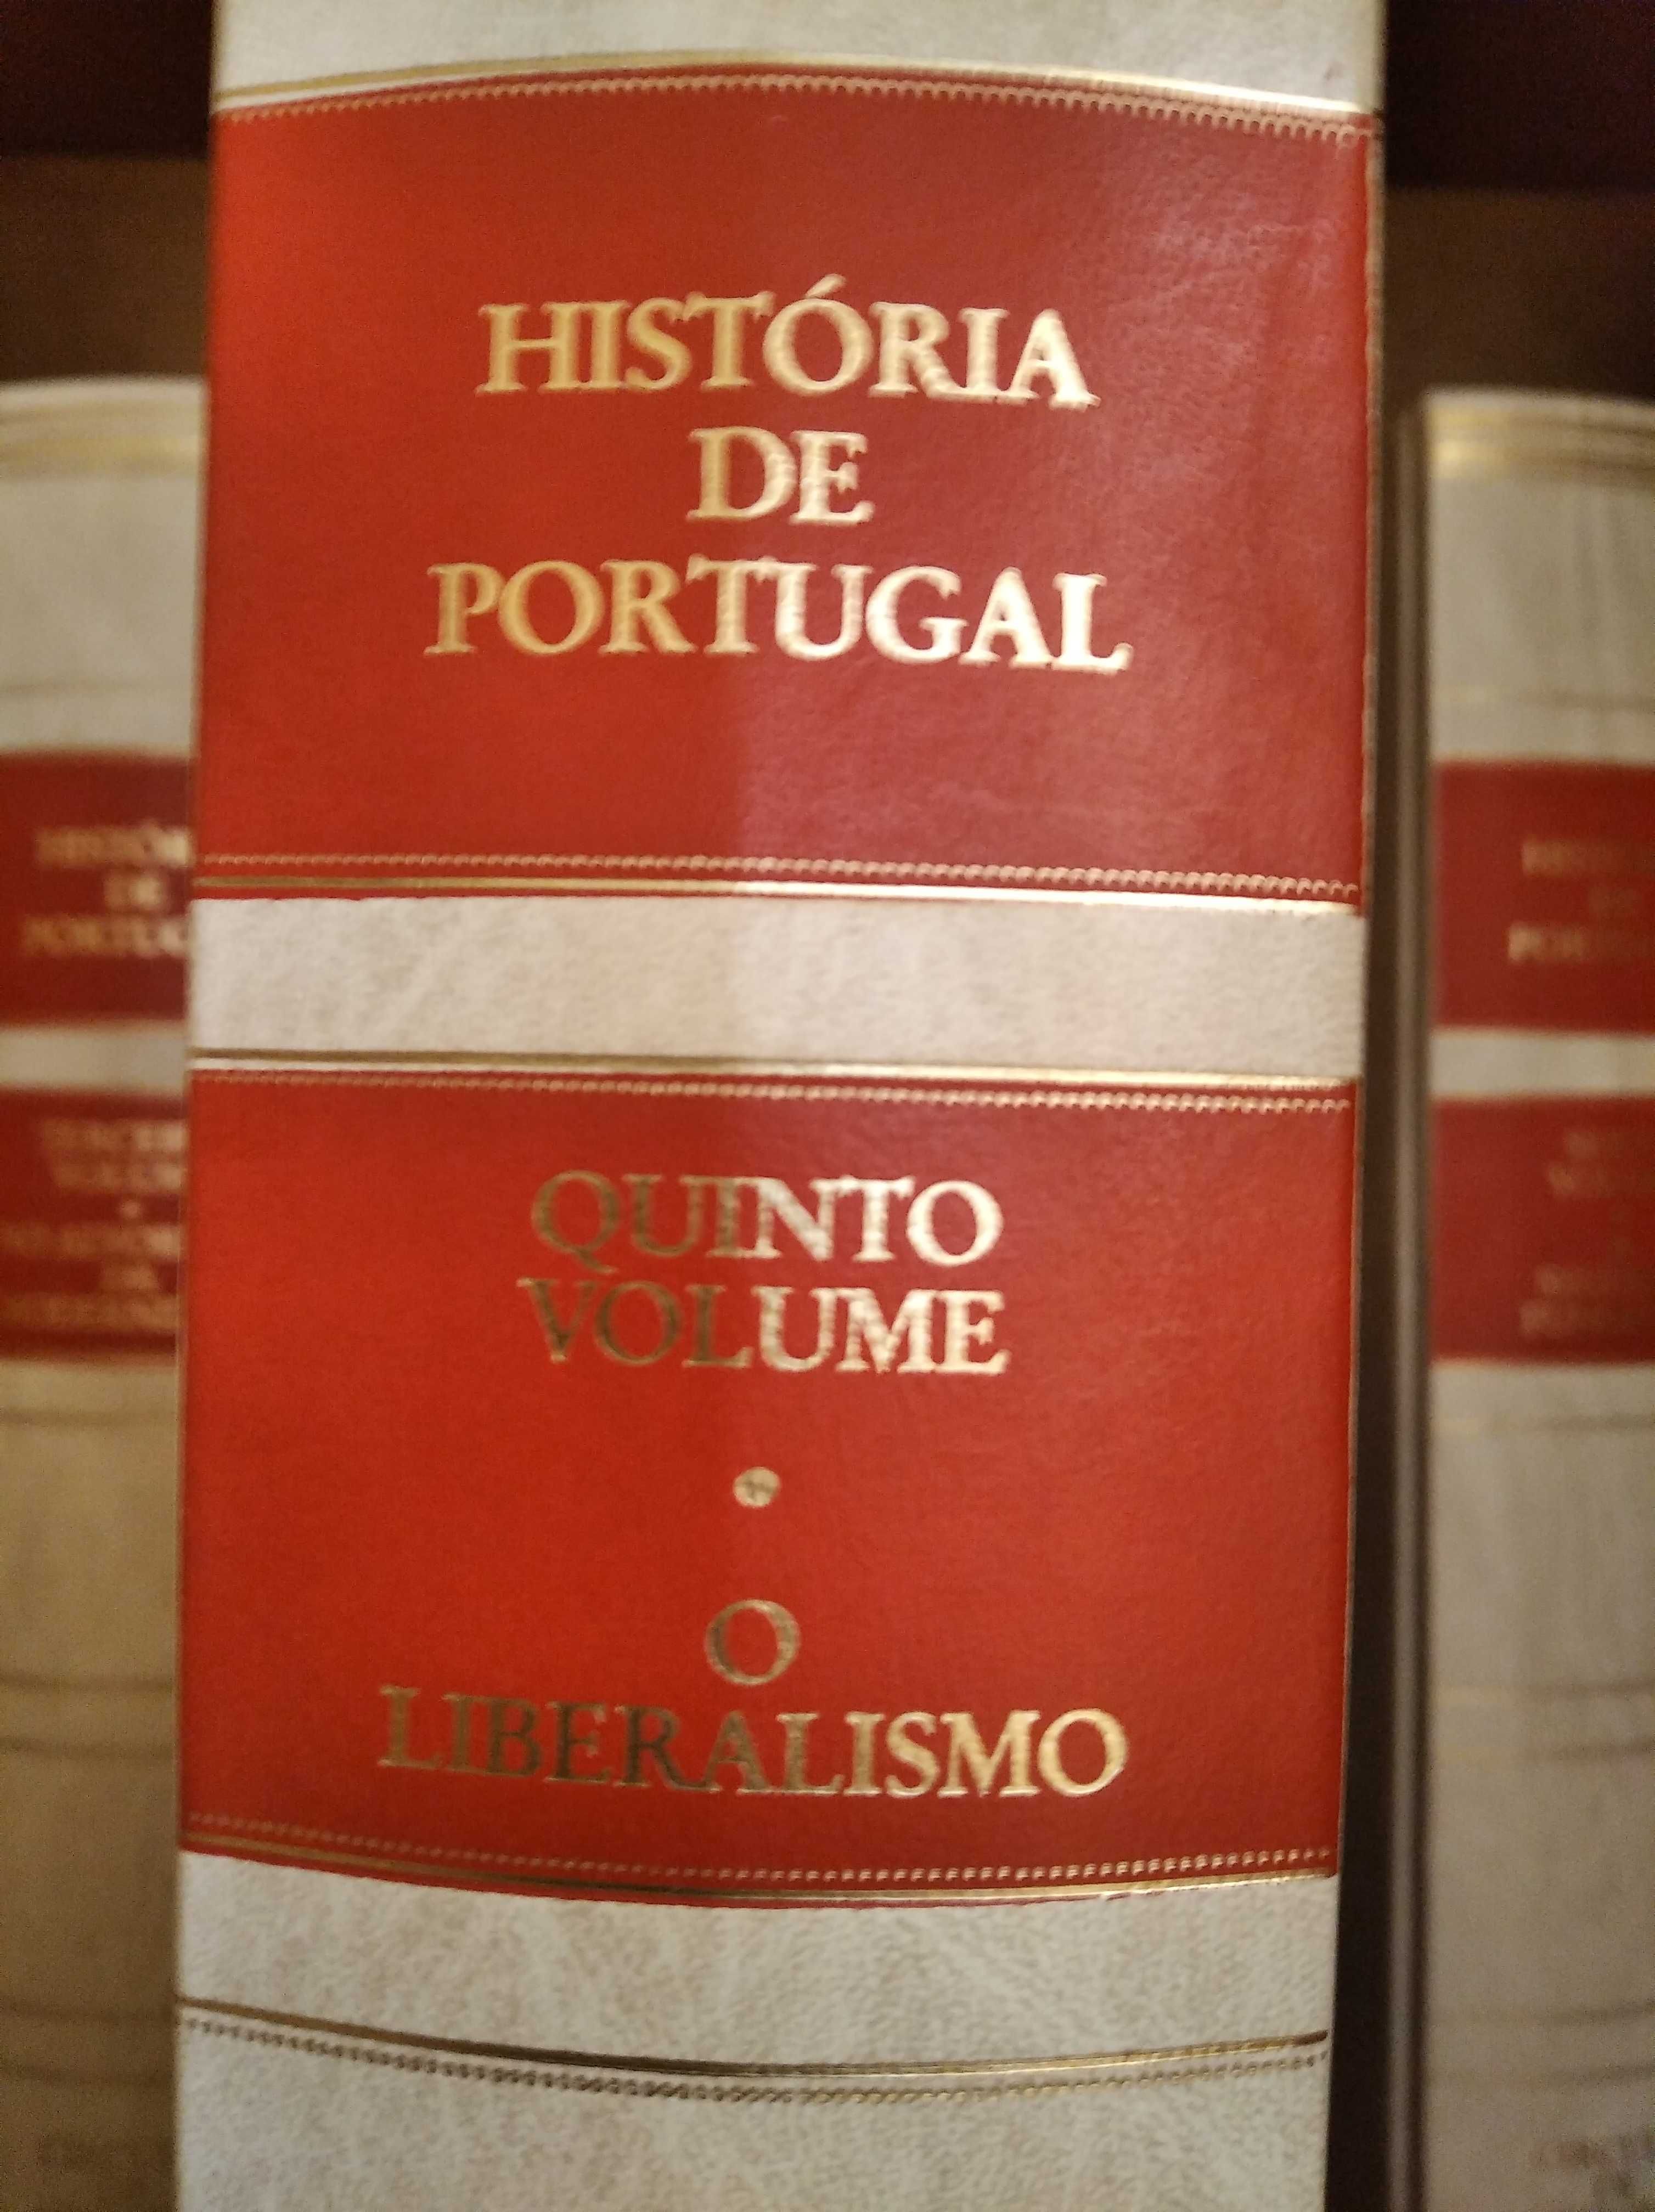 Coleção de 8 volumes de História de Portugal, uma coleção lindíssima